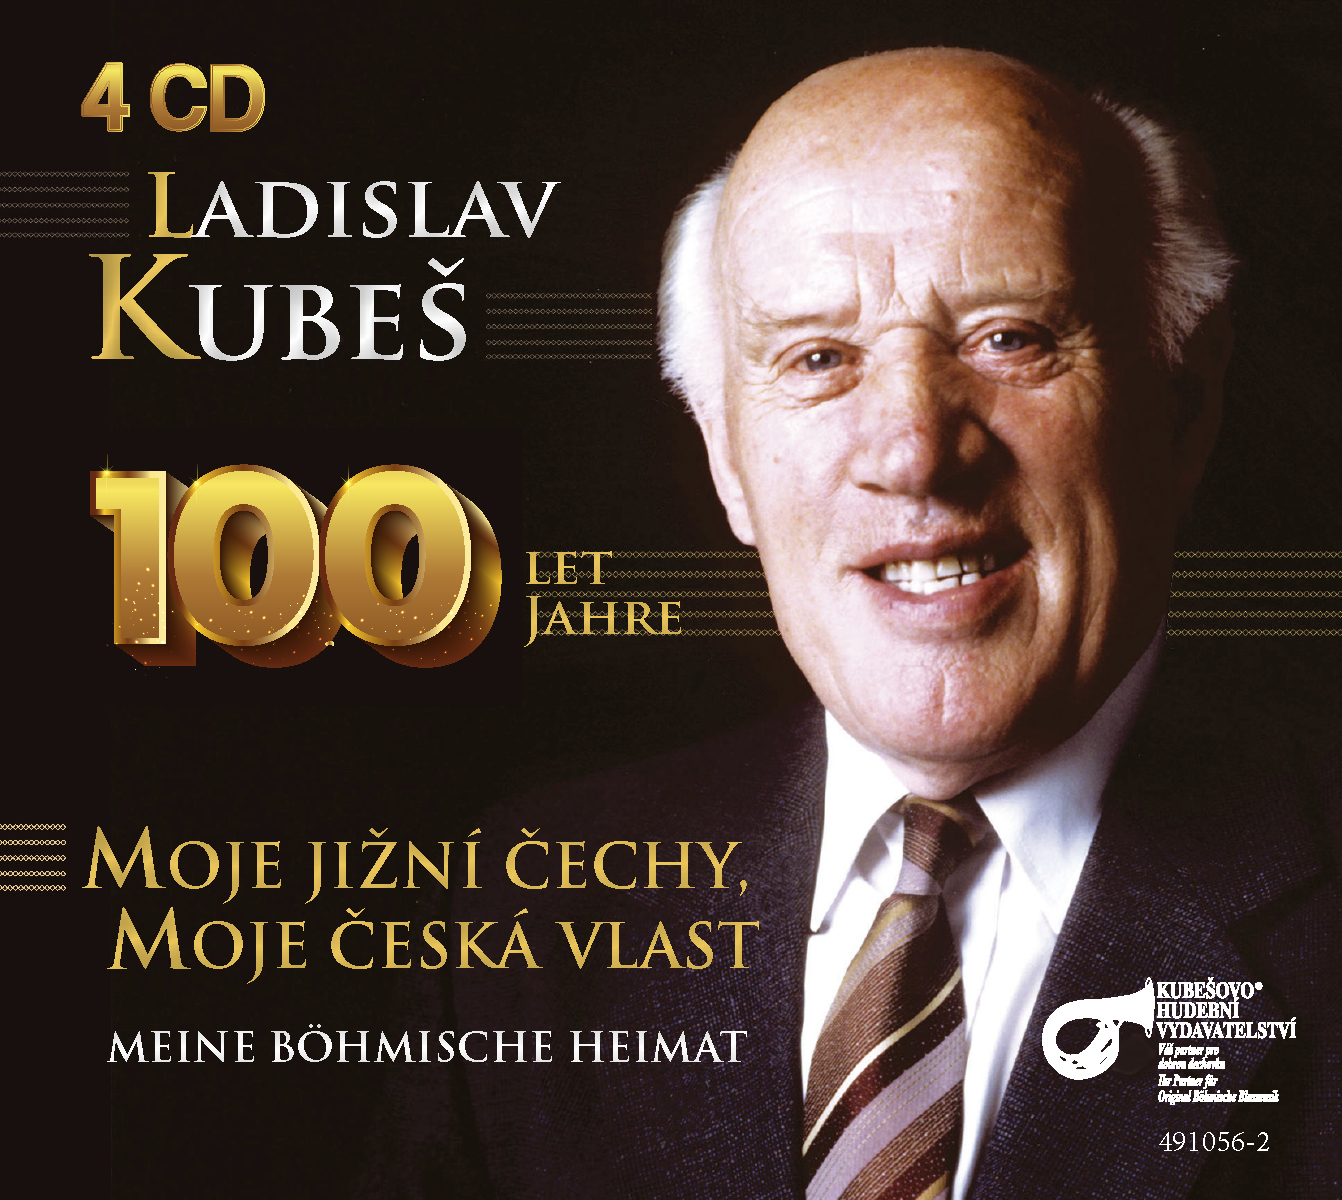 100 Jahre Ladislav Kubeš